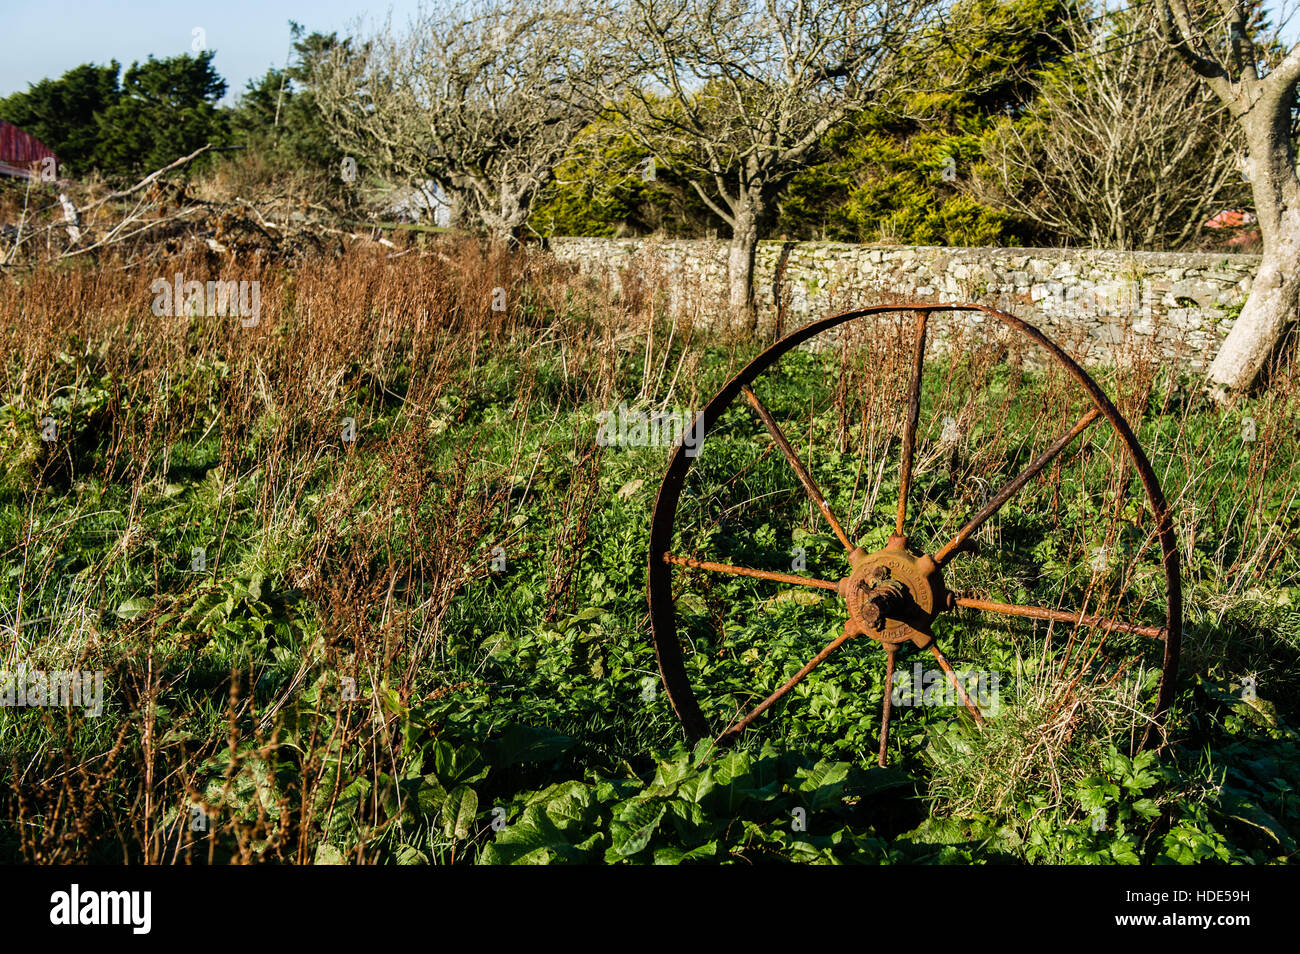 Ein Stück rostigen, alten und ausgedienten Landmaschinen in einem bewachsenen Feld in Irland. Stockfoto